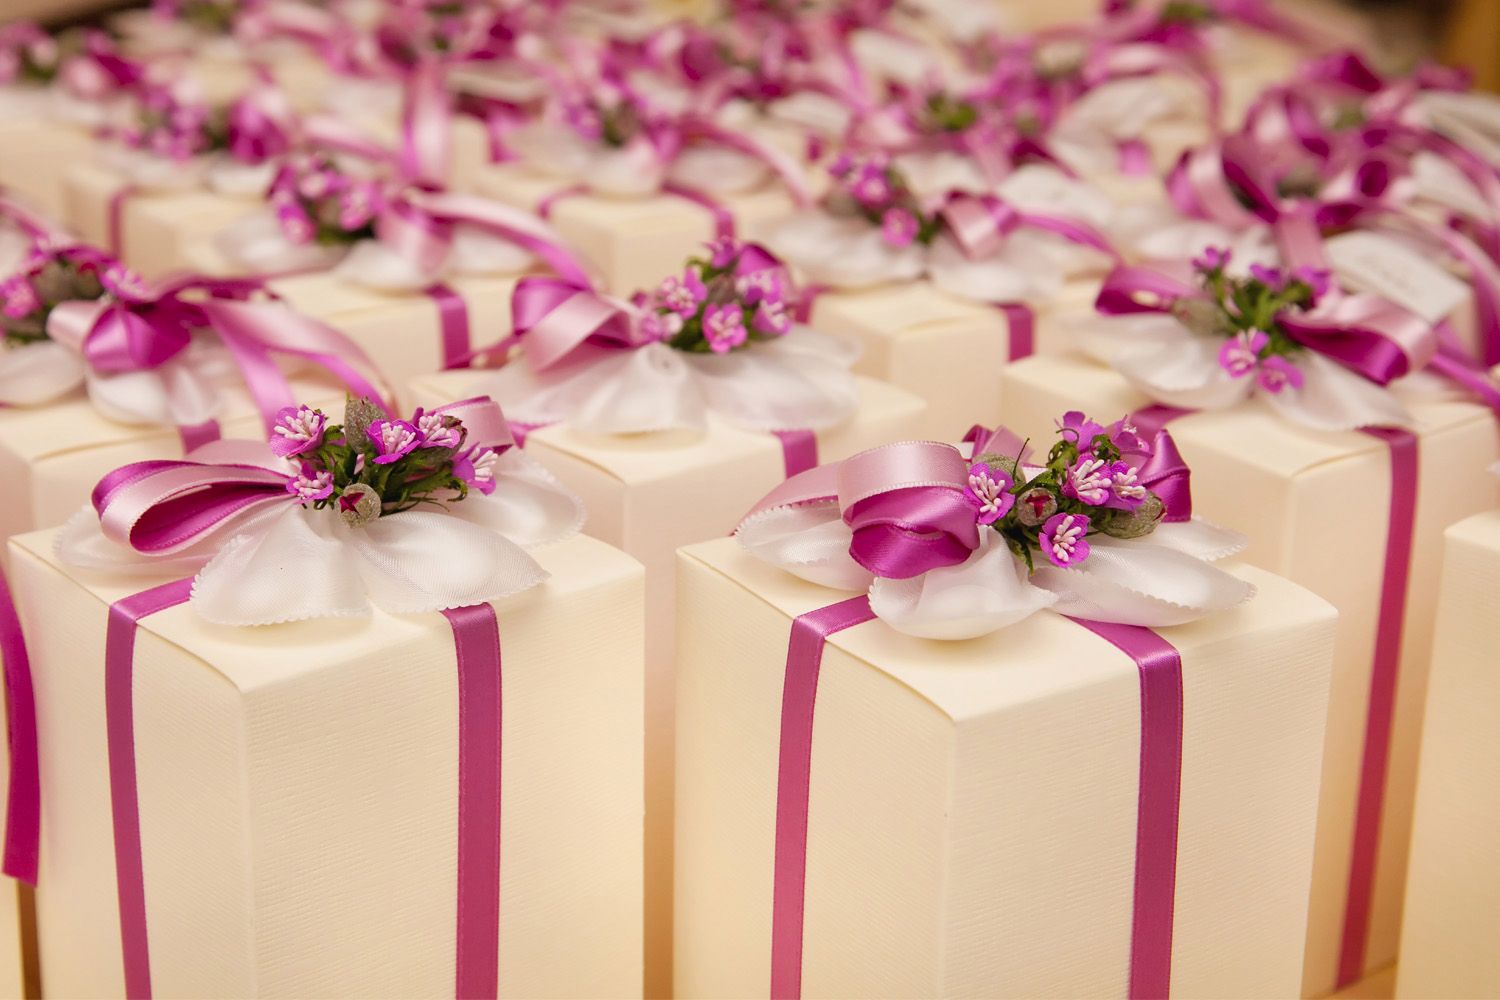 30 Originales regalos para los invitados a tu boda  Detalles boda invitados,  Recuerdos de boda, Detalles boda